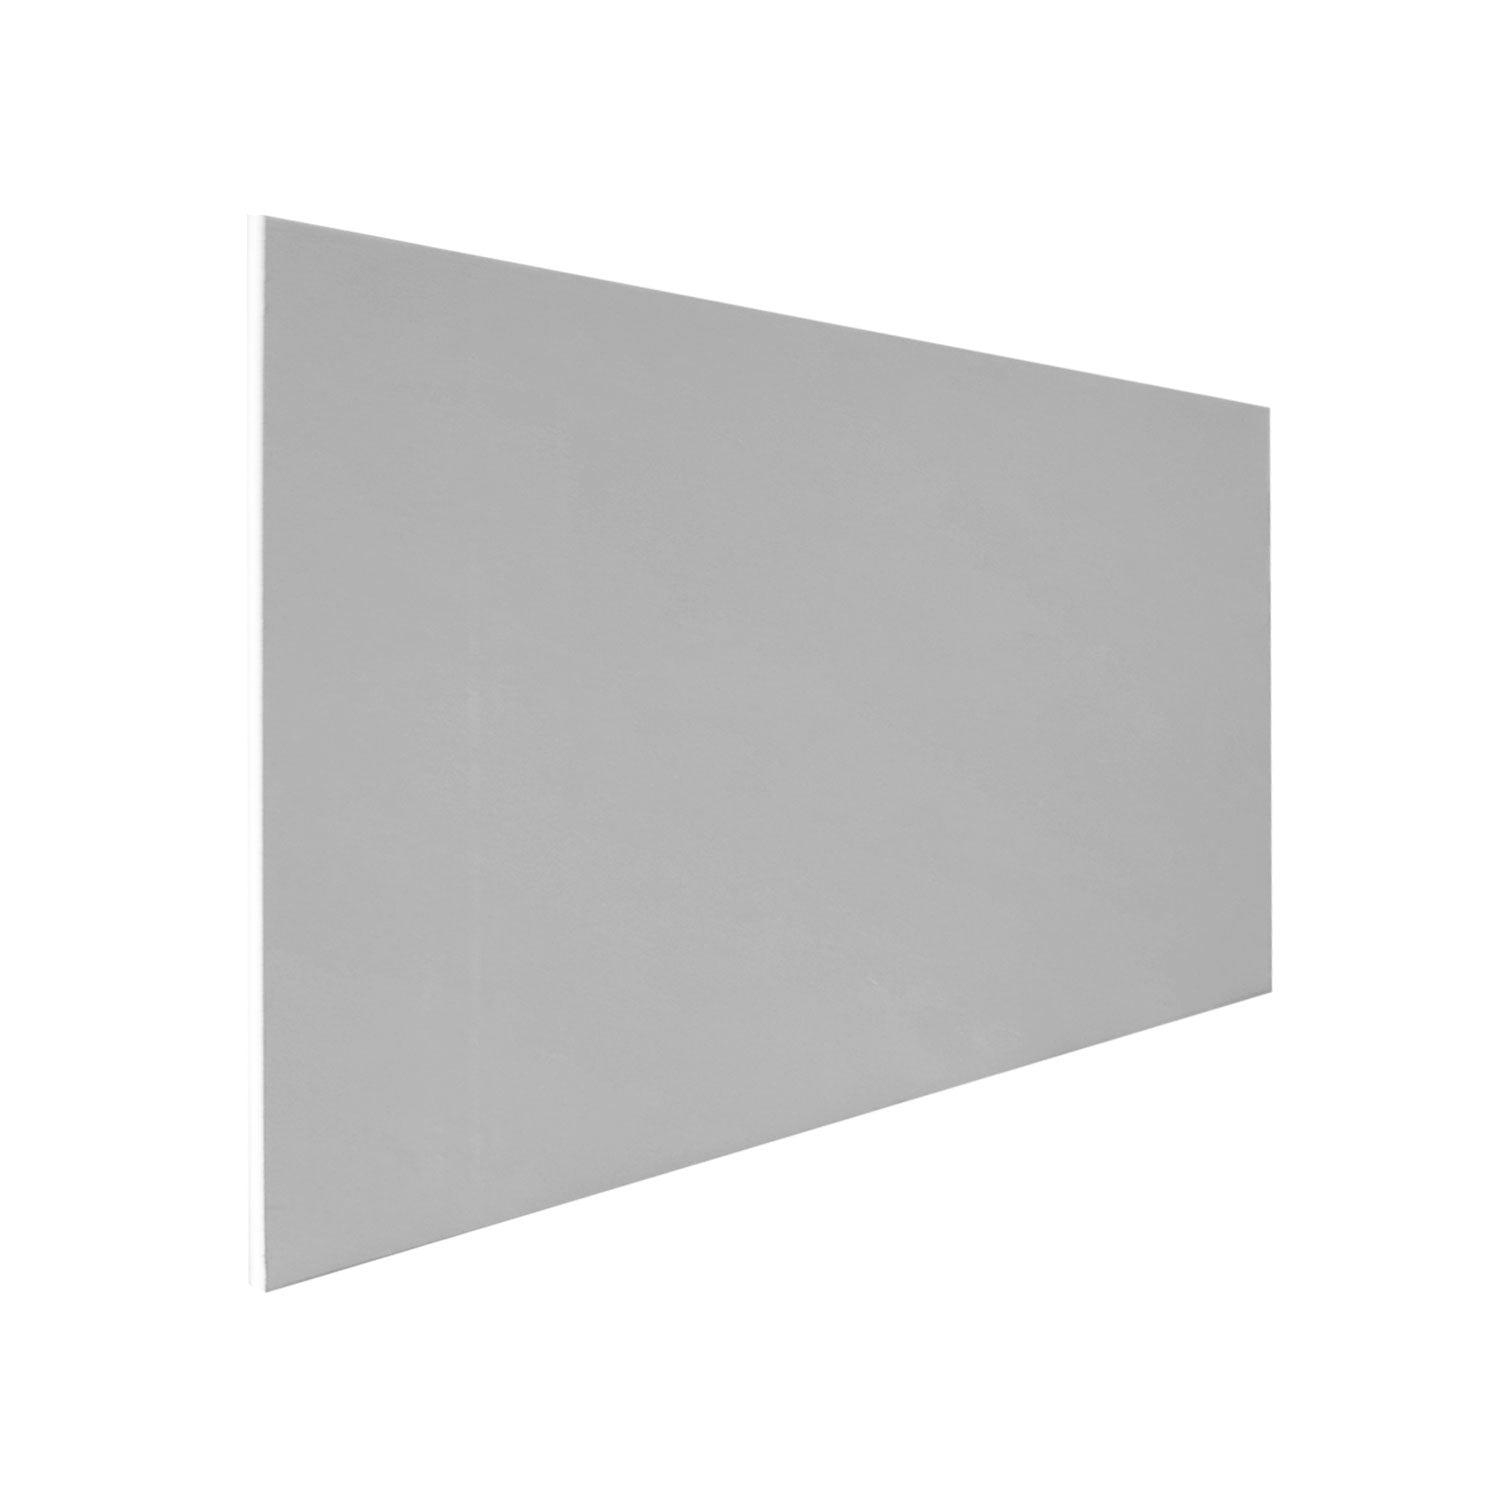 Plasterboard 6' x 3' 12.5mm Square Edge